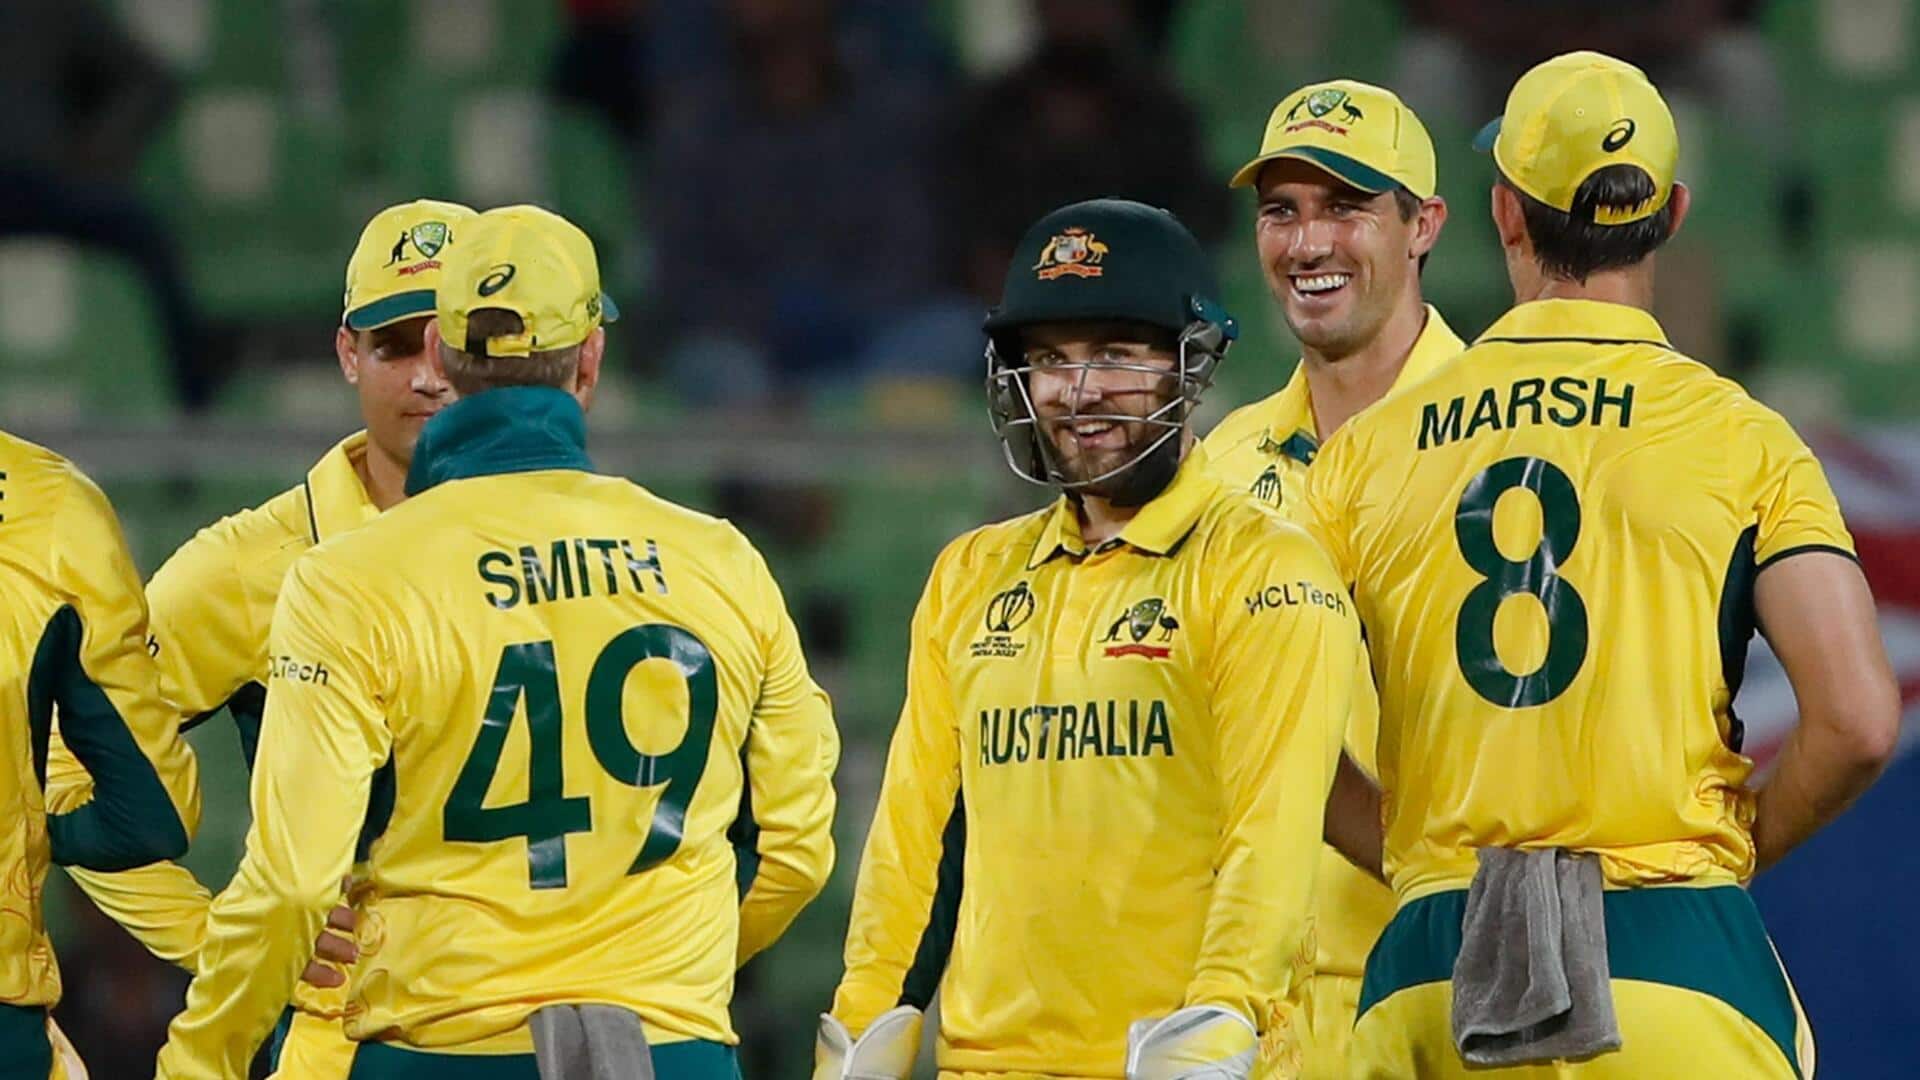 ऑस्ट्रेलिया और न्यूजीलैंड मैच में बने वनडे विश्व कप इतिहास के सर्वाधिक कुल रन, जानिए आंकड़े